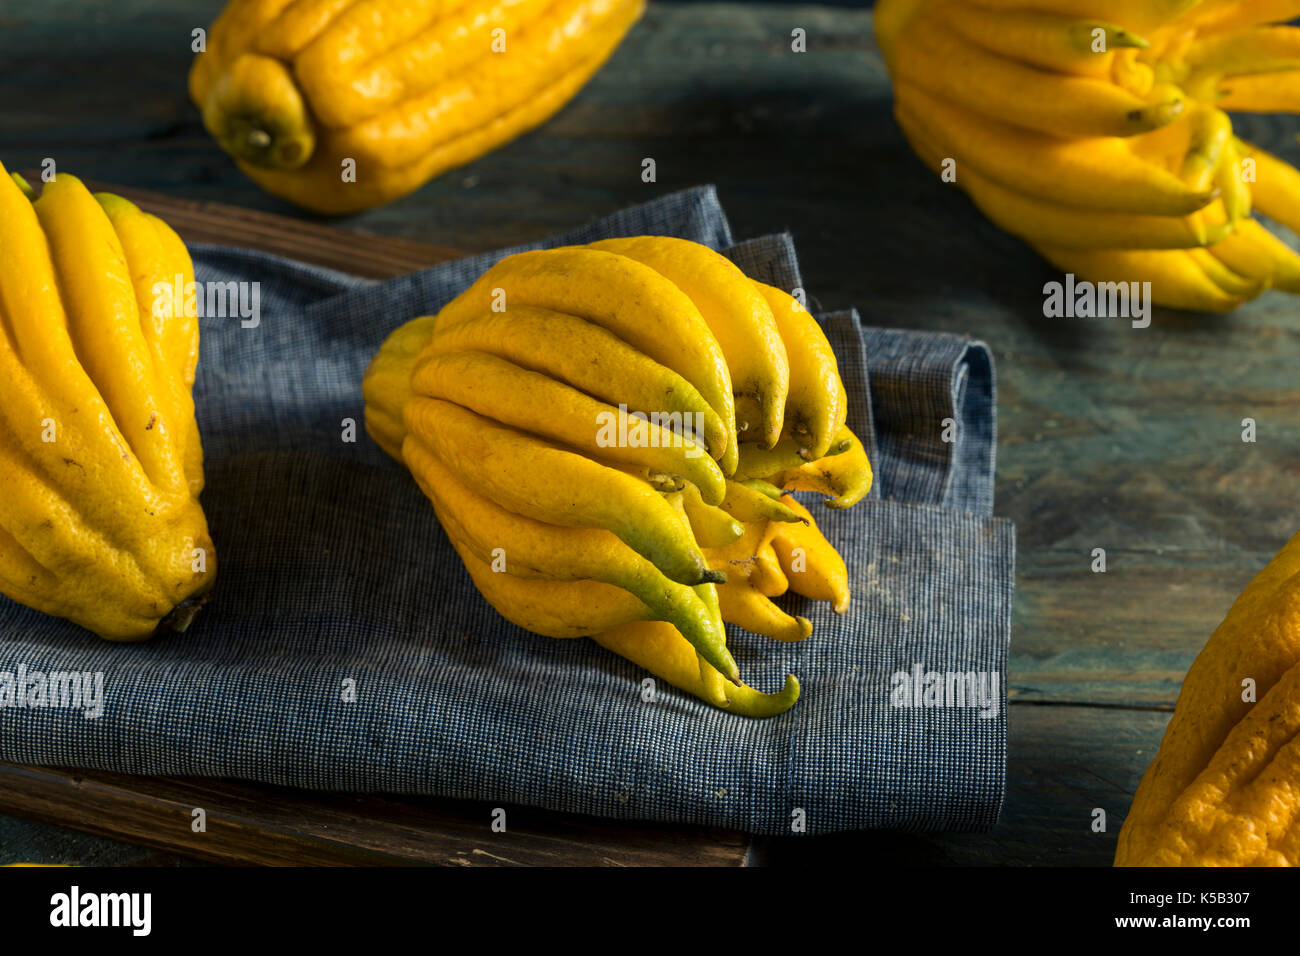 Bouddhas organique jaune part d'agrumes avec les doigts Banque D'Images